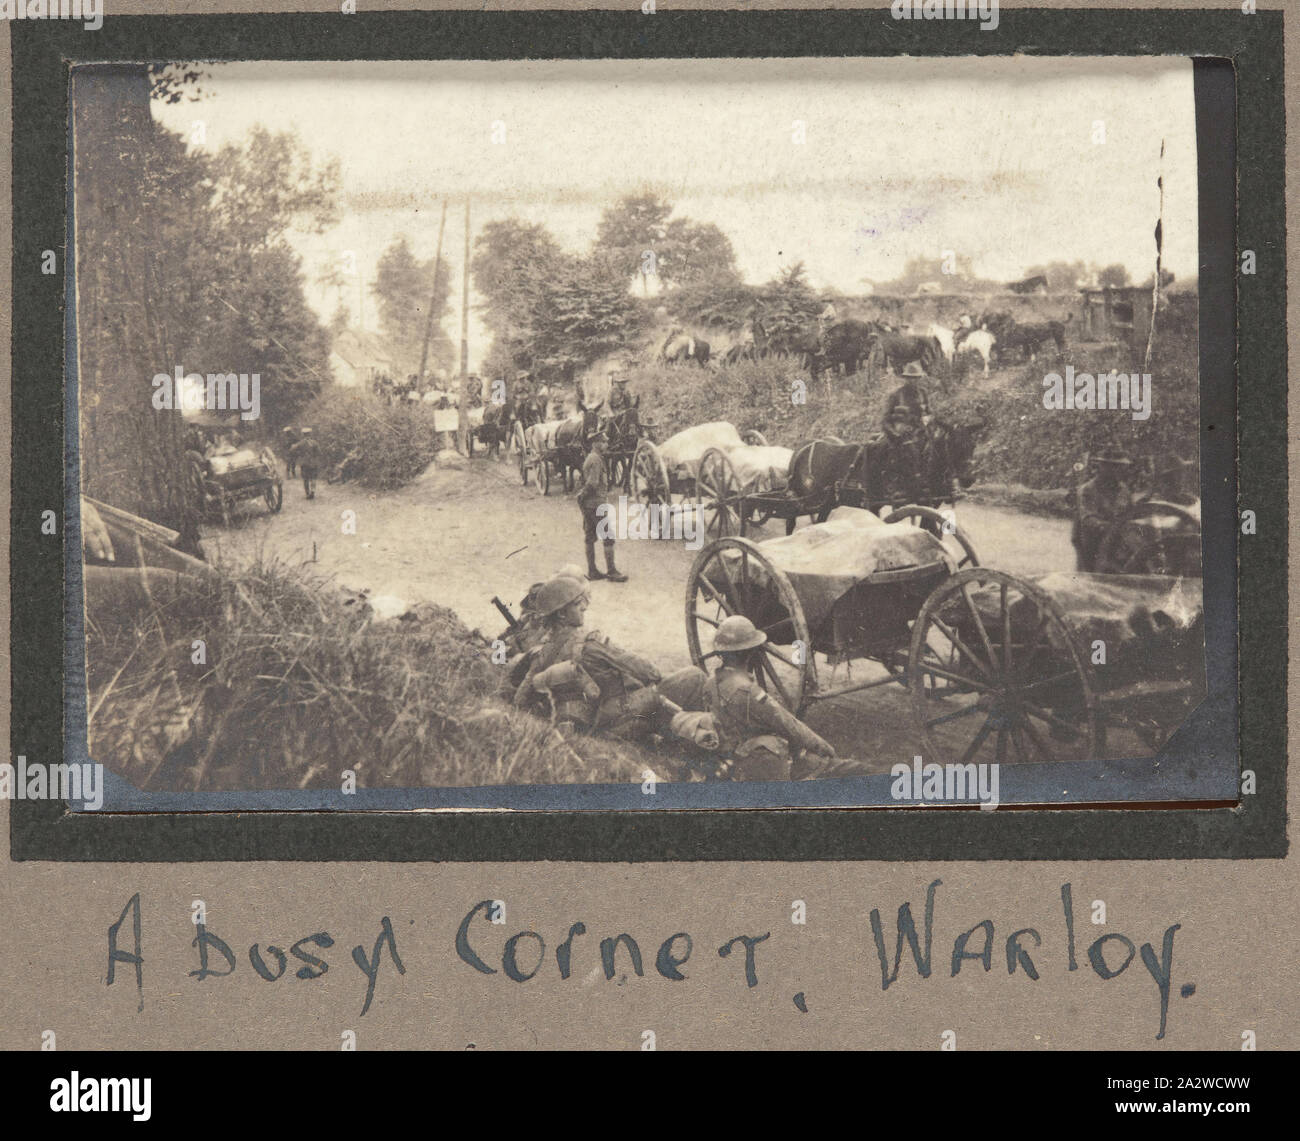 Foto - "einer belebten Ecke, Warloy", Frankreich, Sergeant John Lord, der Erste Weltkrieg, 1916-1917, Schwarz und Weiß Foto zeigt eine 'busy Corner" in Warloy-Baillon, Frankreich Stockfoto